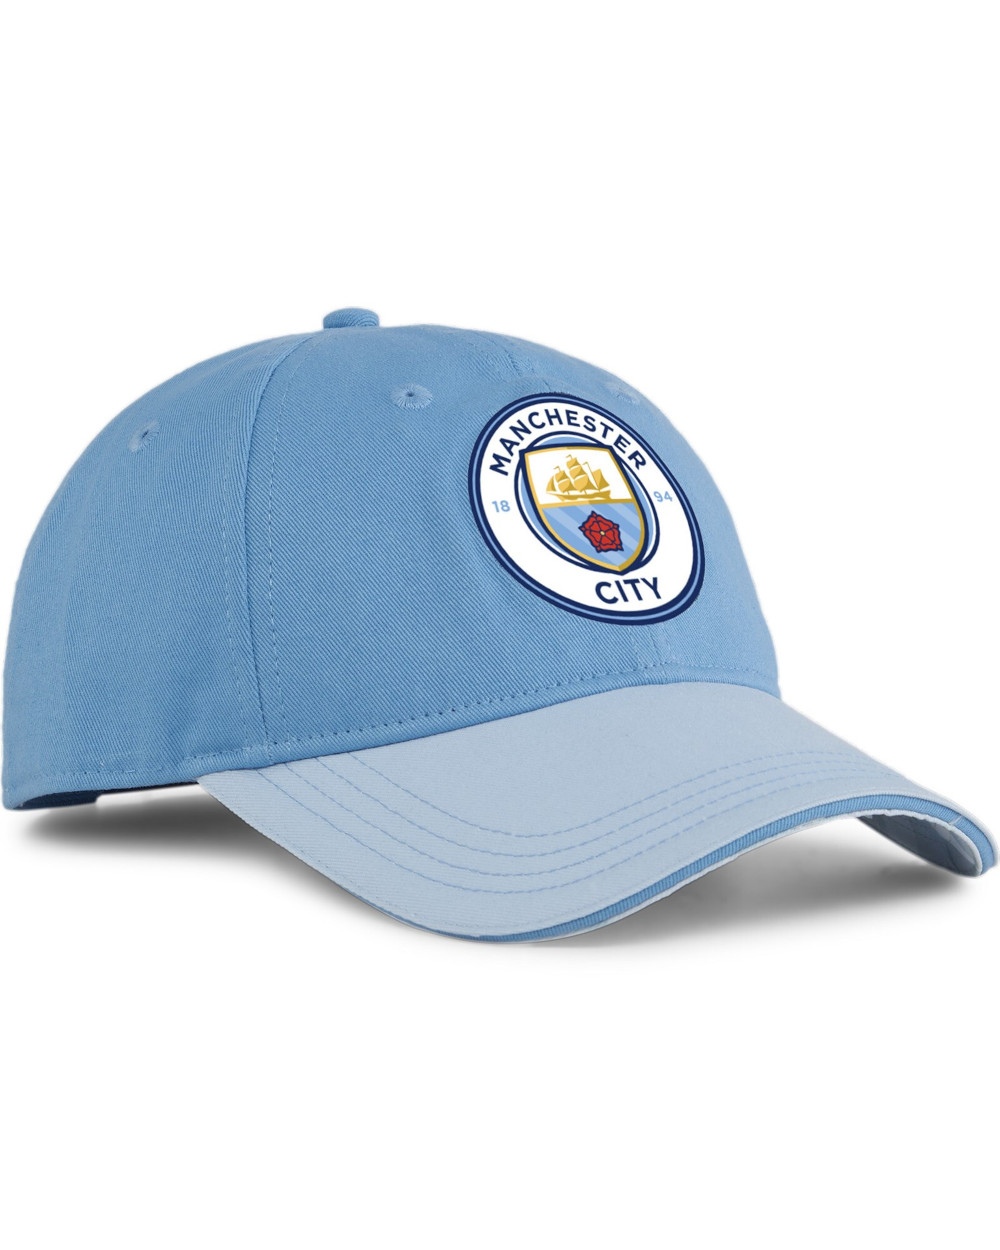  Manchester City Puma Cappello Berretto Unisex Azzurro Baseball Fan Cotone